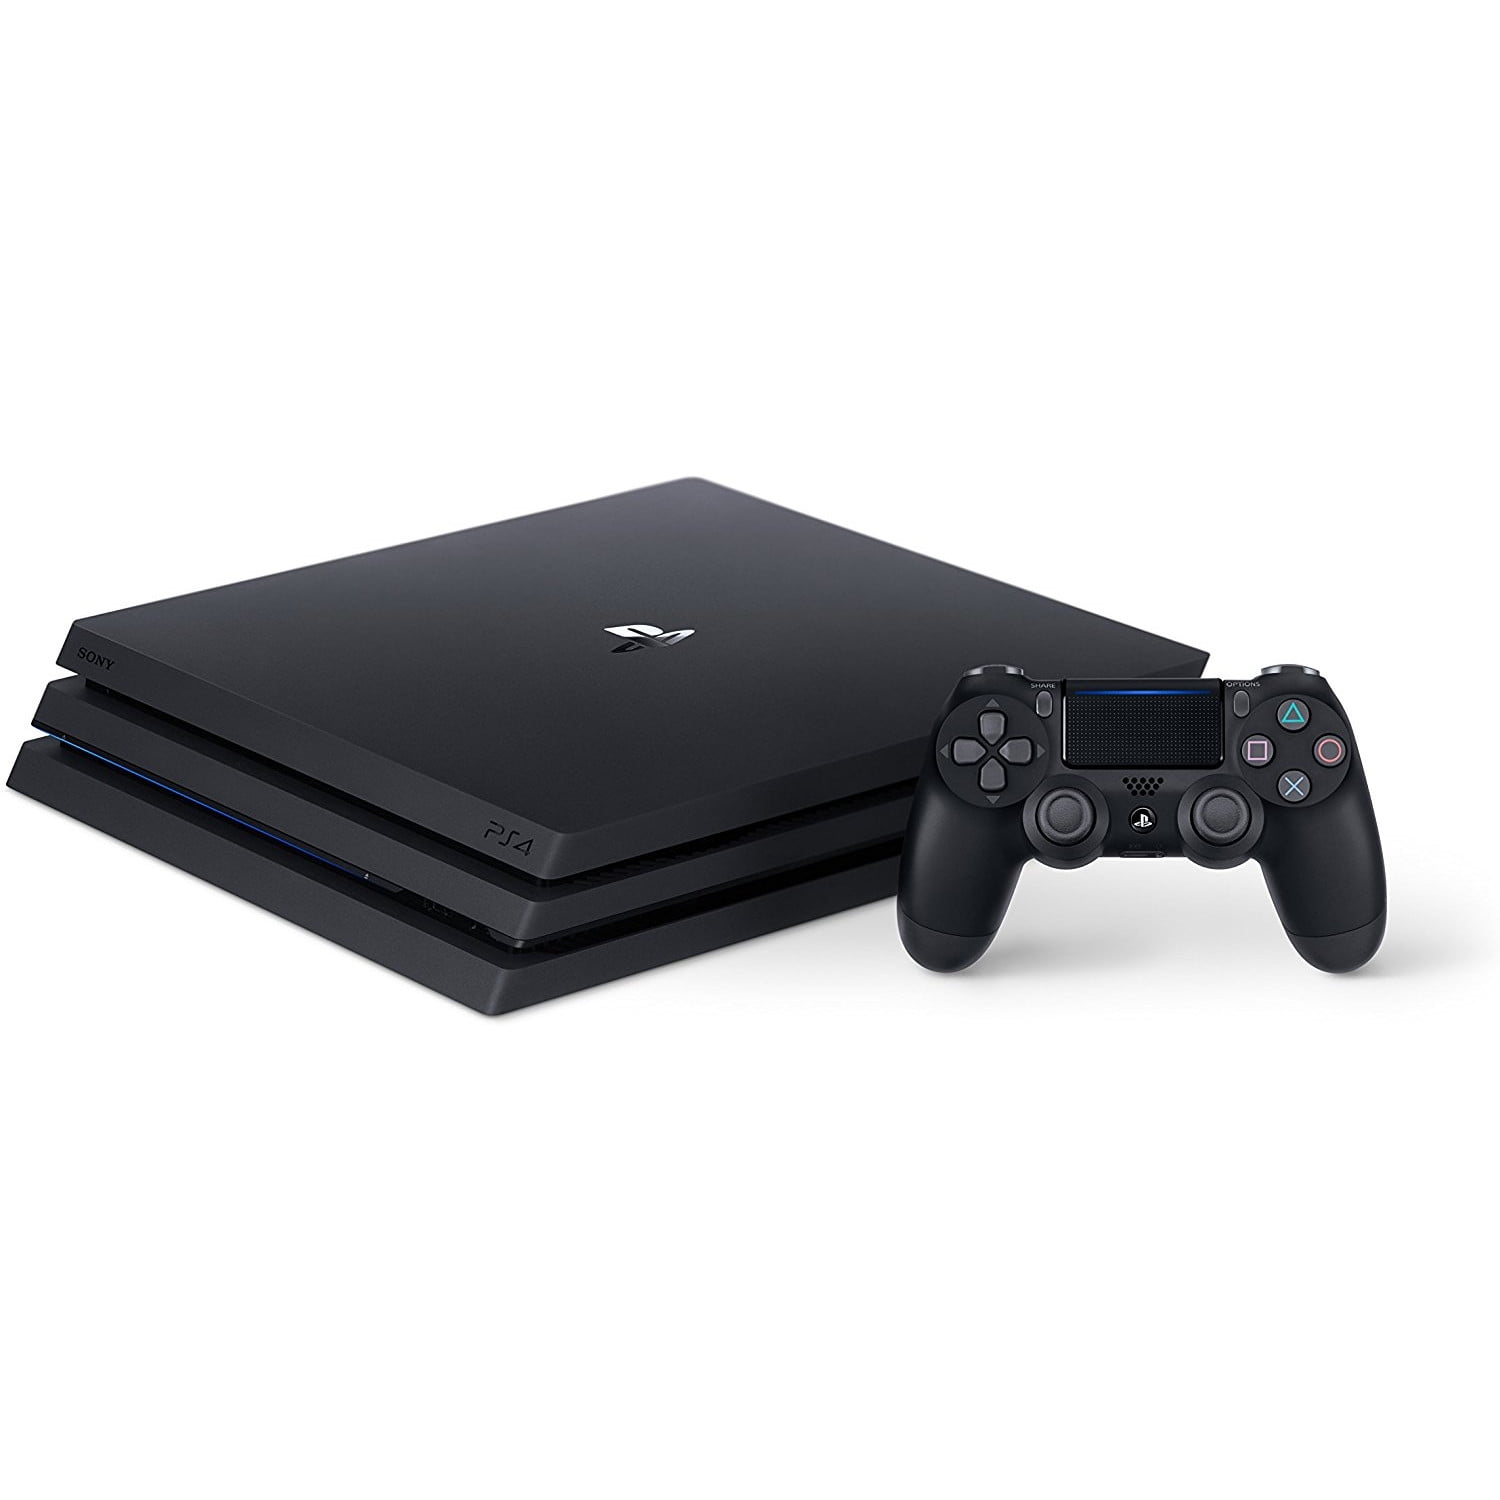 Okklusion lærken Fancy PlayStation 4 Pro 1TB Gaming Console, Black, 3001510 - Walmart.com